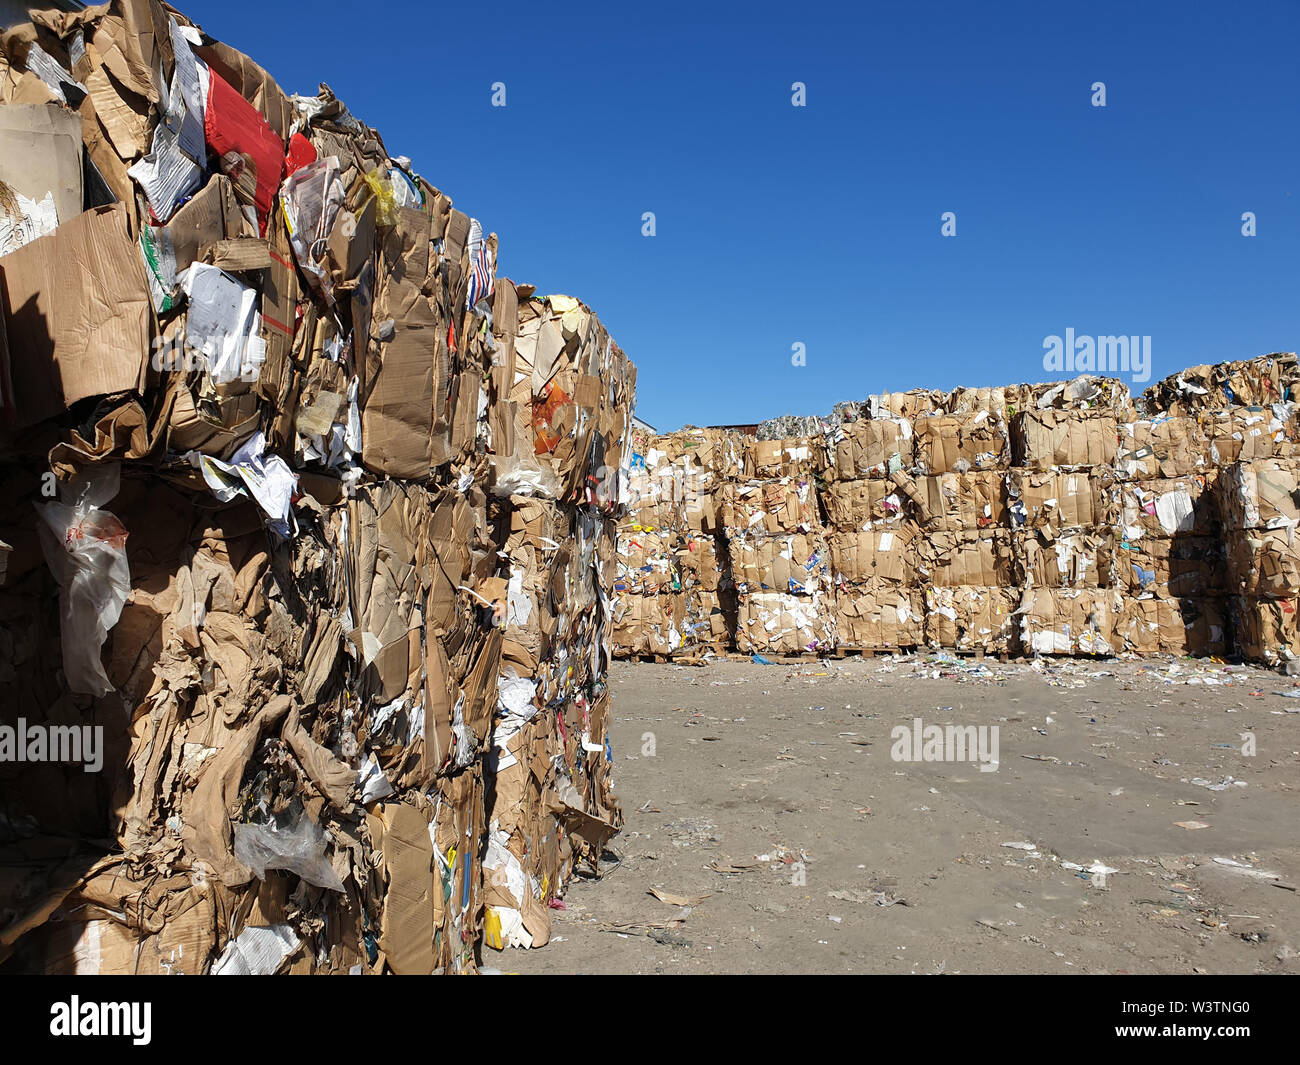 Stapel von Papier und Pappe Müll bei Recycling plan Stockfotografie - Alamy